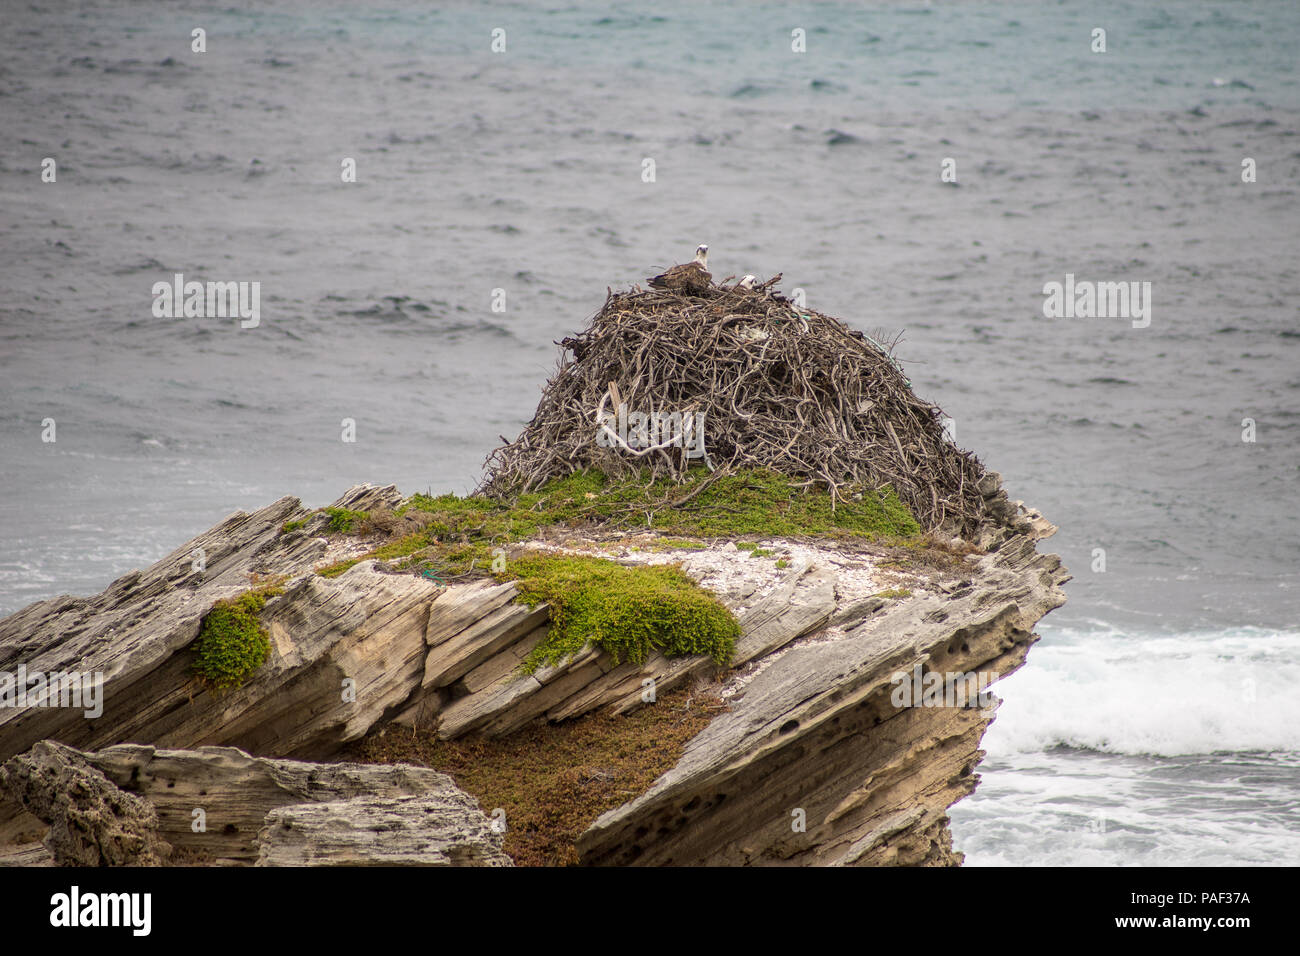 Sur l'Osprey, perché près de l'Osprey Nest, Rotnest Island, Perth, Australie Banque D'Images